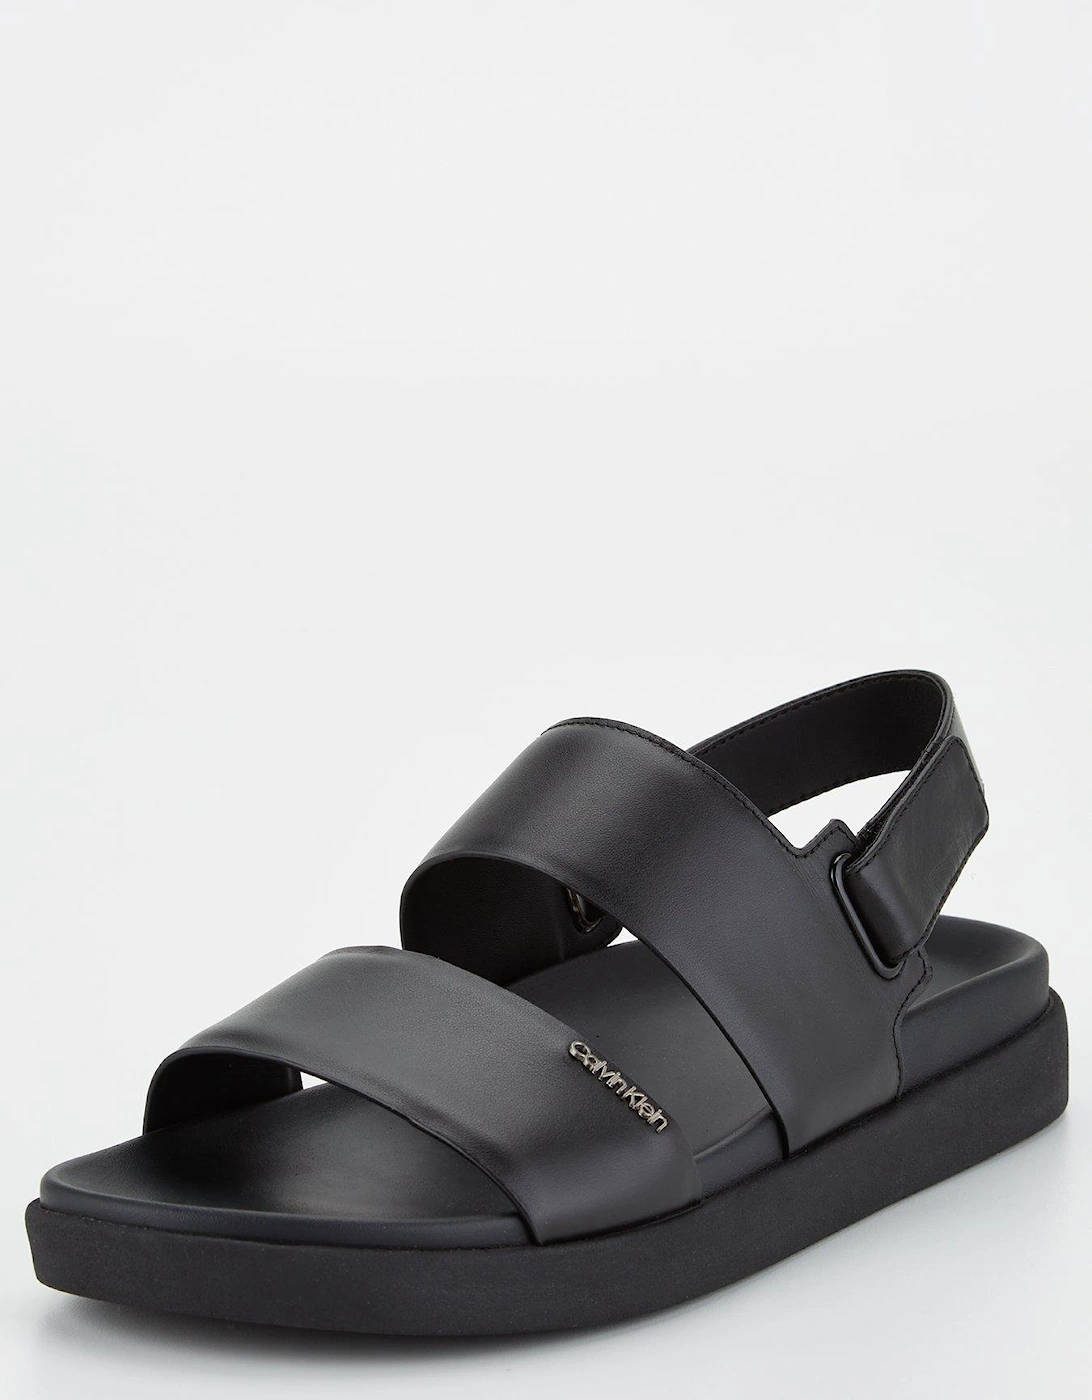 Flatform Leather Sandal - Black